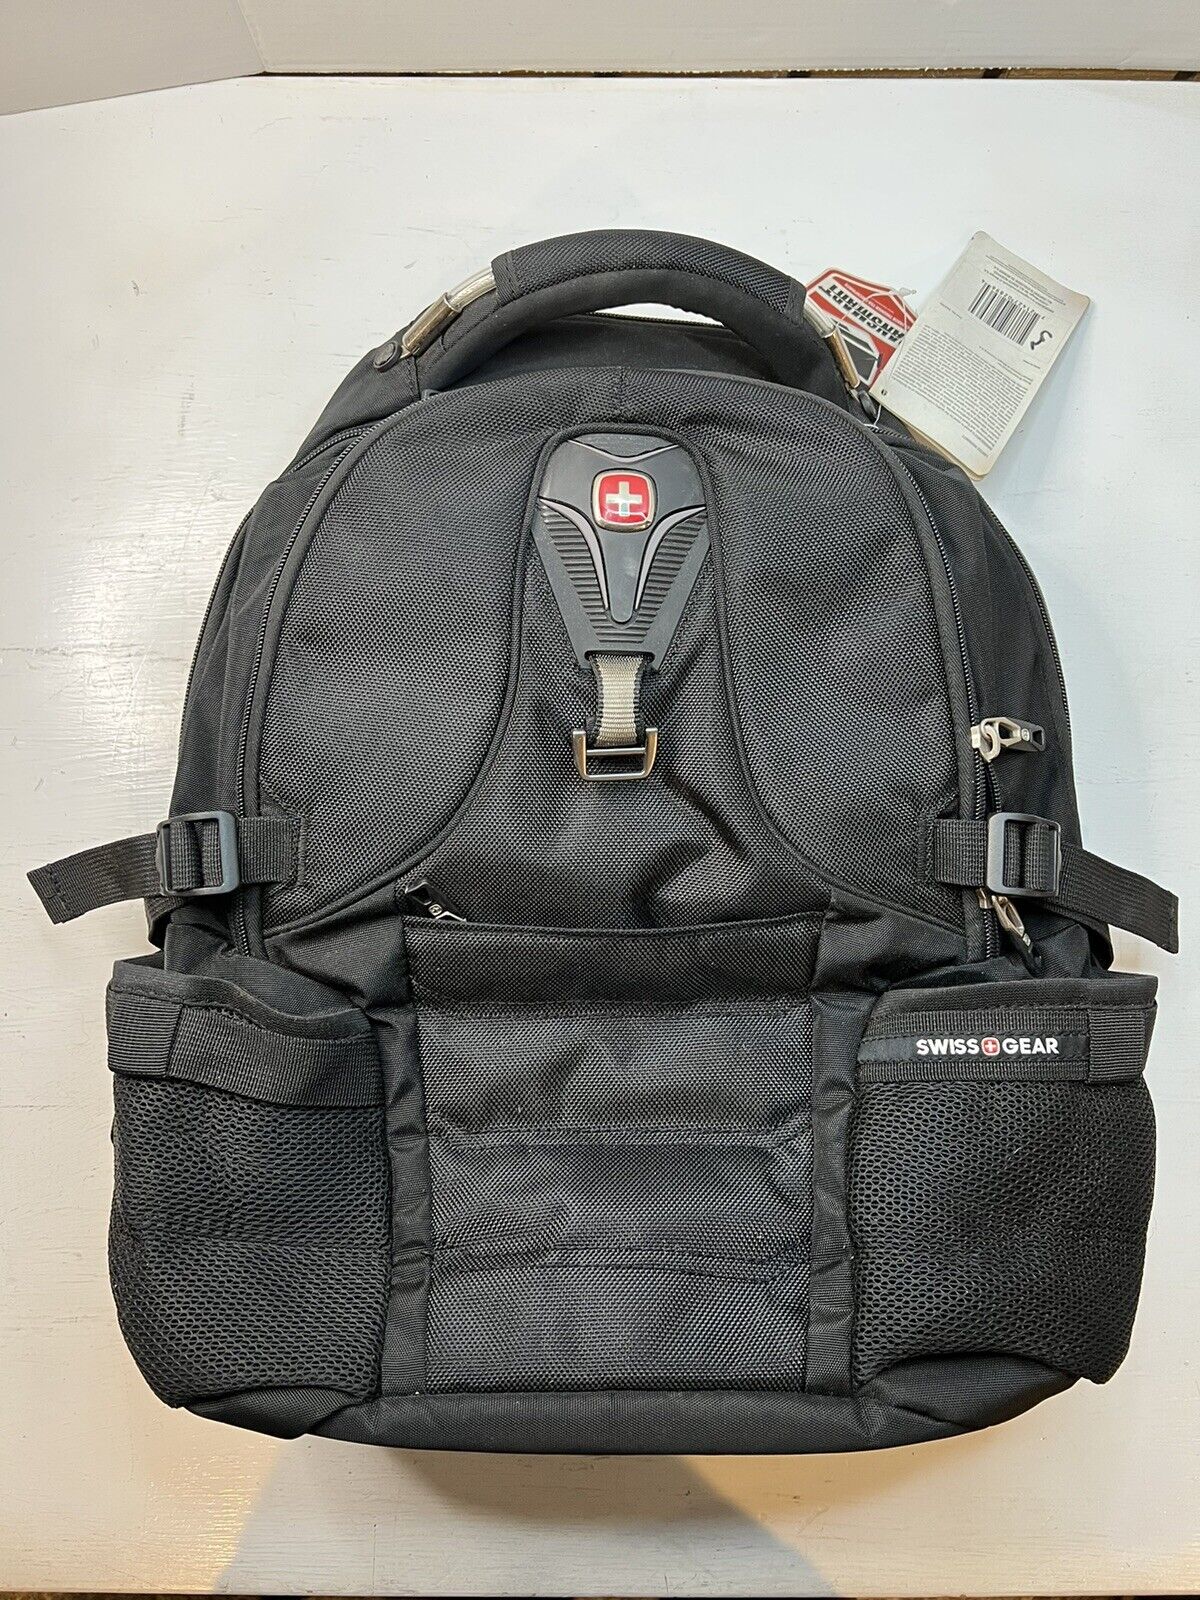 SwissGear 2769 ScanSmart Laptop Backpack, Black, 17.5-Inch NEW